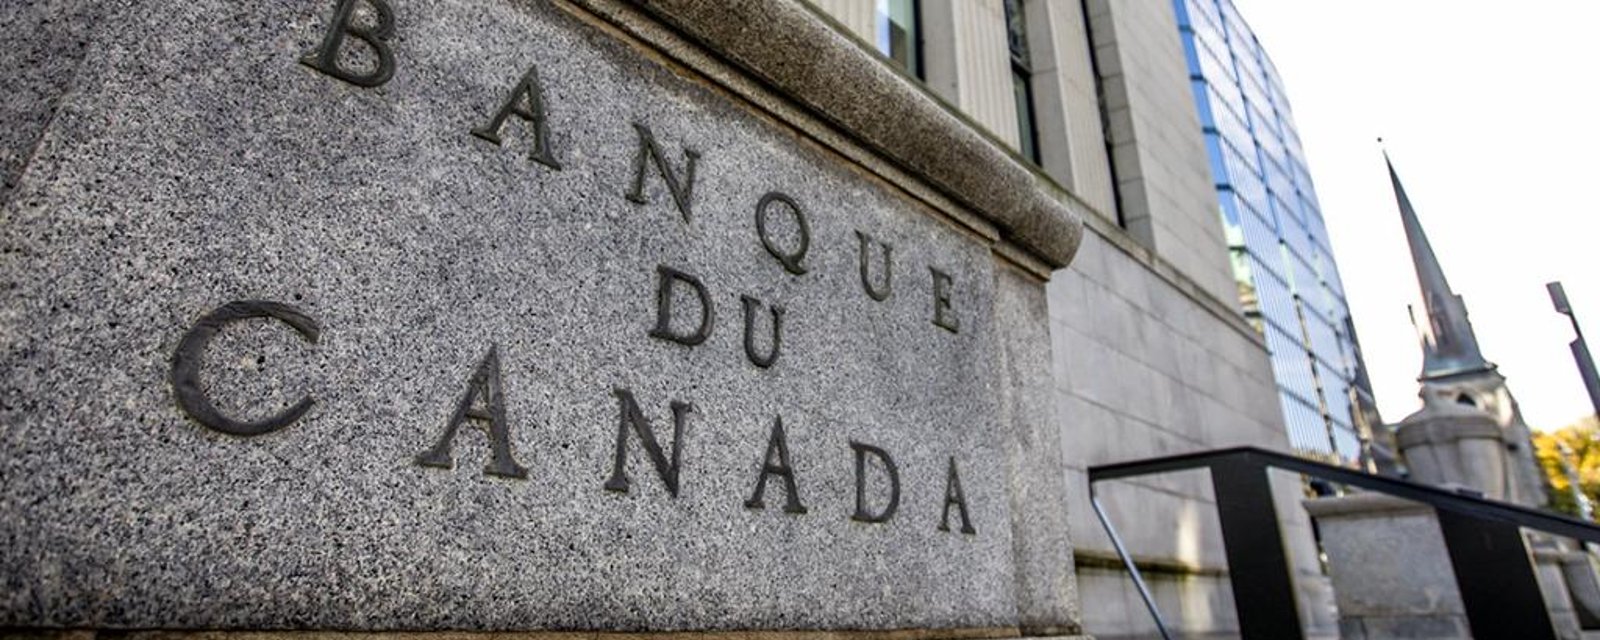 La Banque du Canada annoncera sa décision concernant le taux directeur ce mercredi